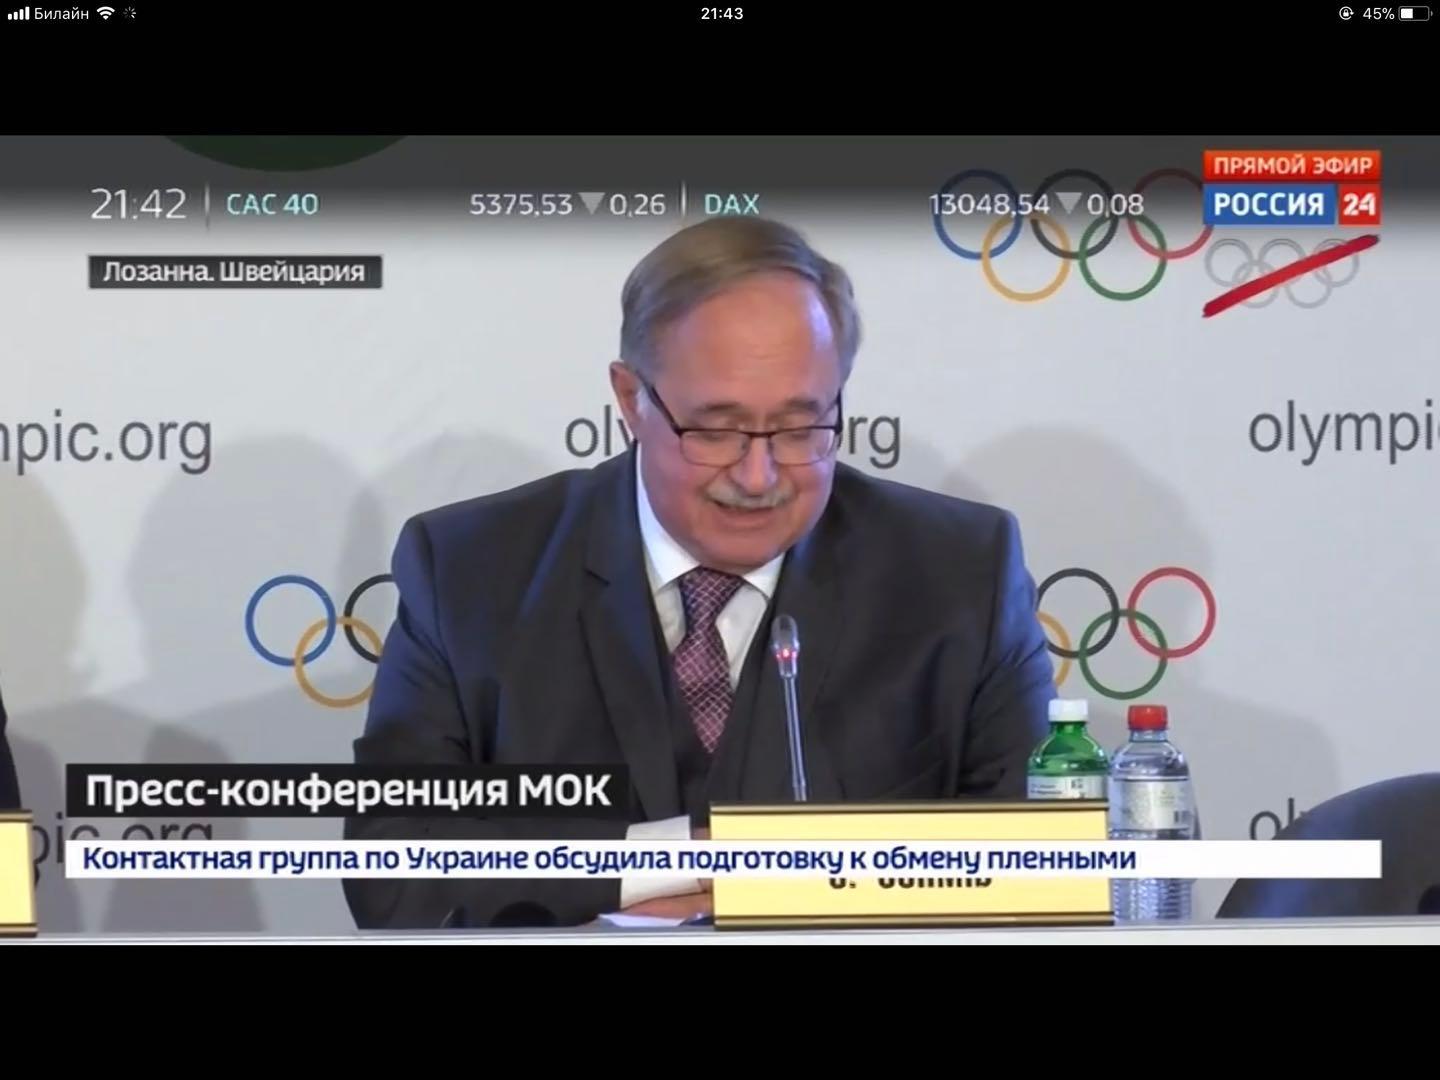 俄国家电视台将不转播平昌冬奥会 奥运五环被打斜杠